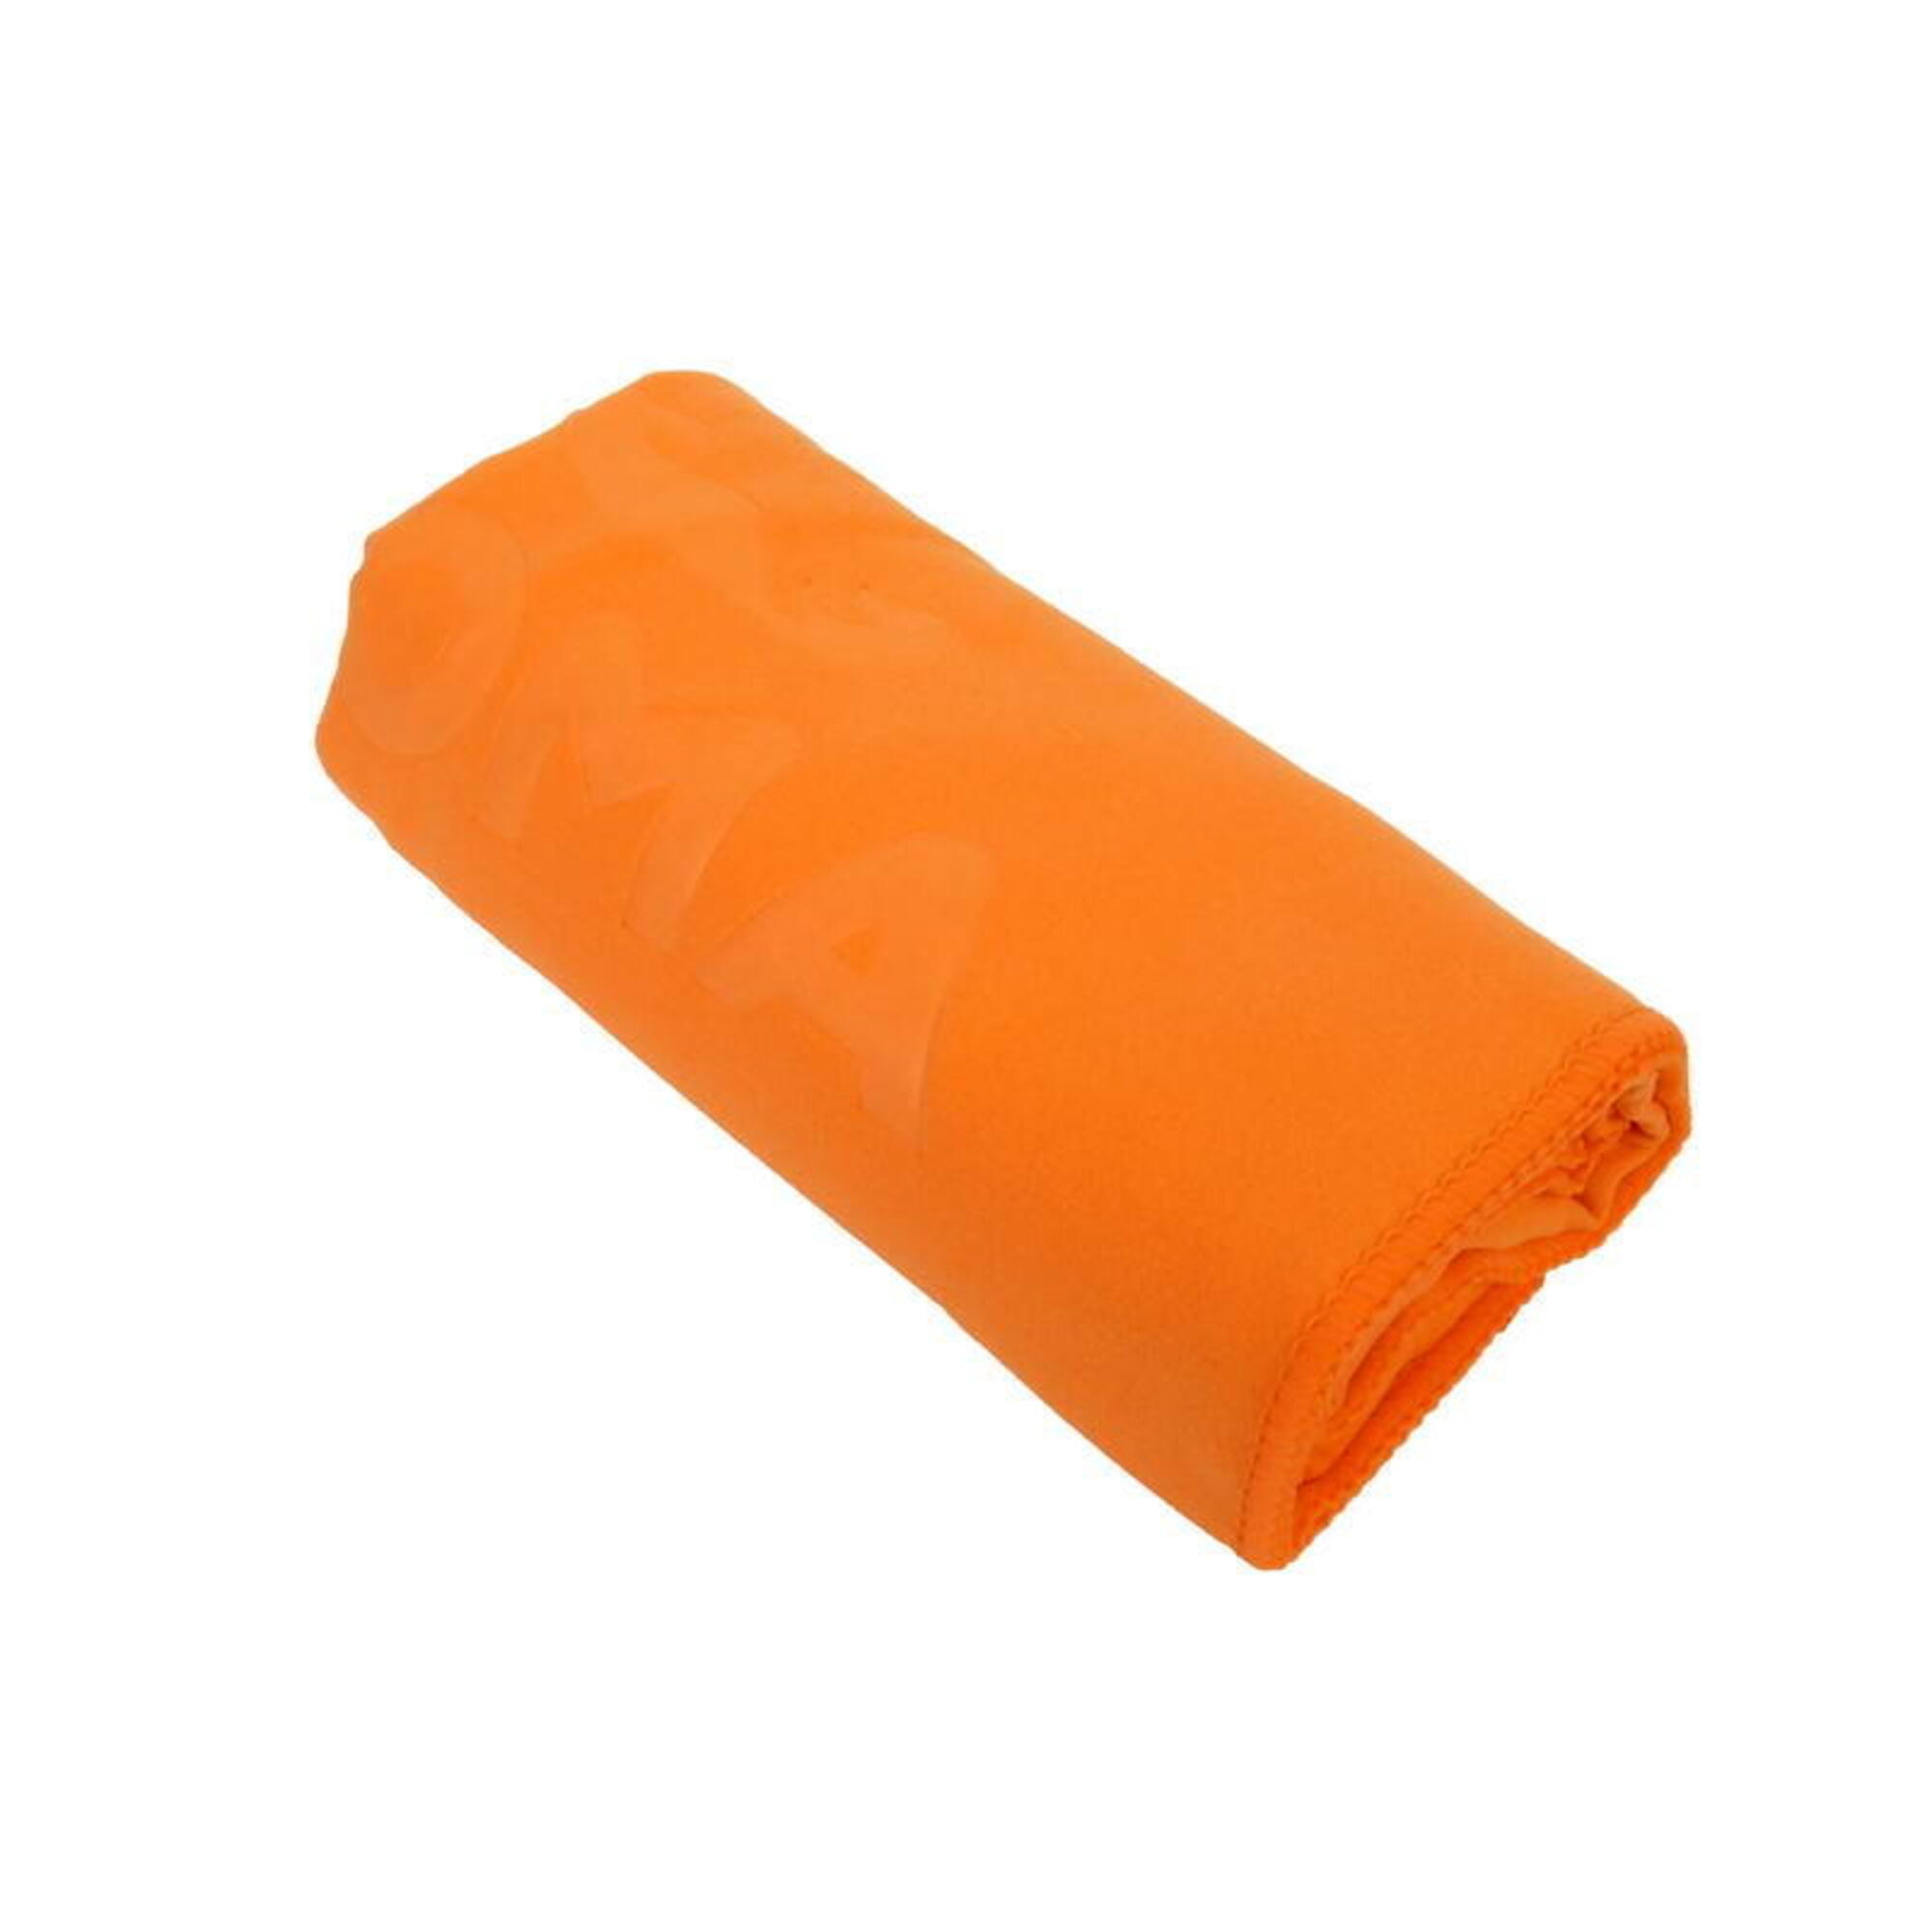 微纖吸水毛巾, 橙色